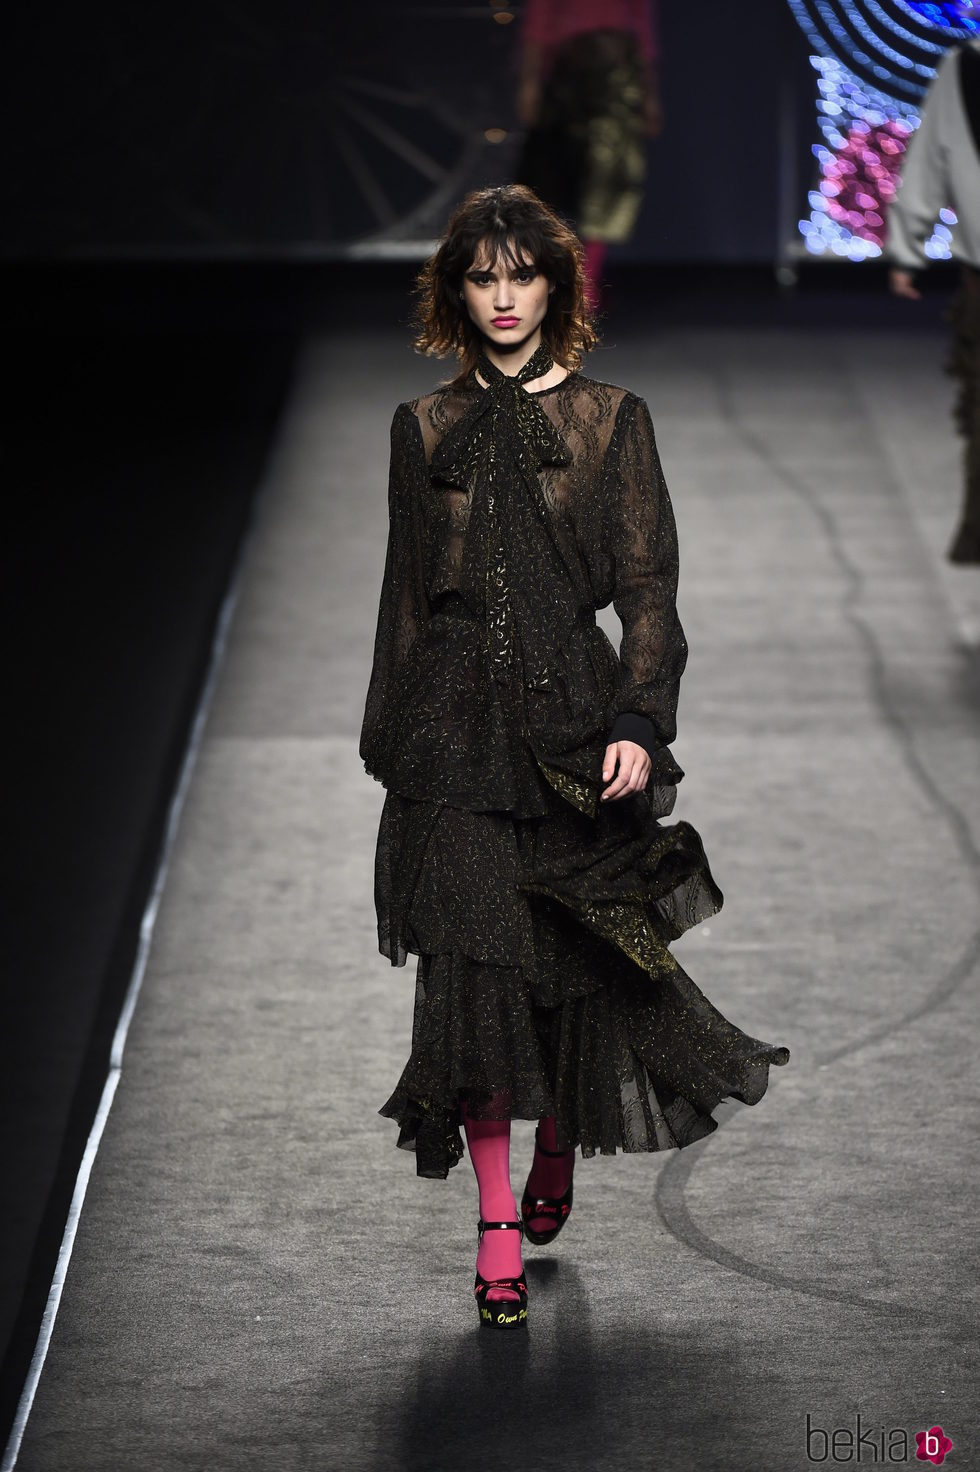 Vestido negro de volantes de Juana Martín colección otoño/invierno 2018/2019 en Madrid Fashion Week